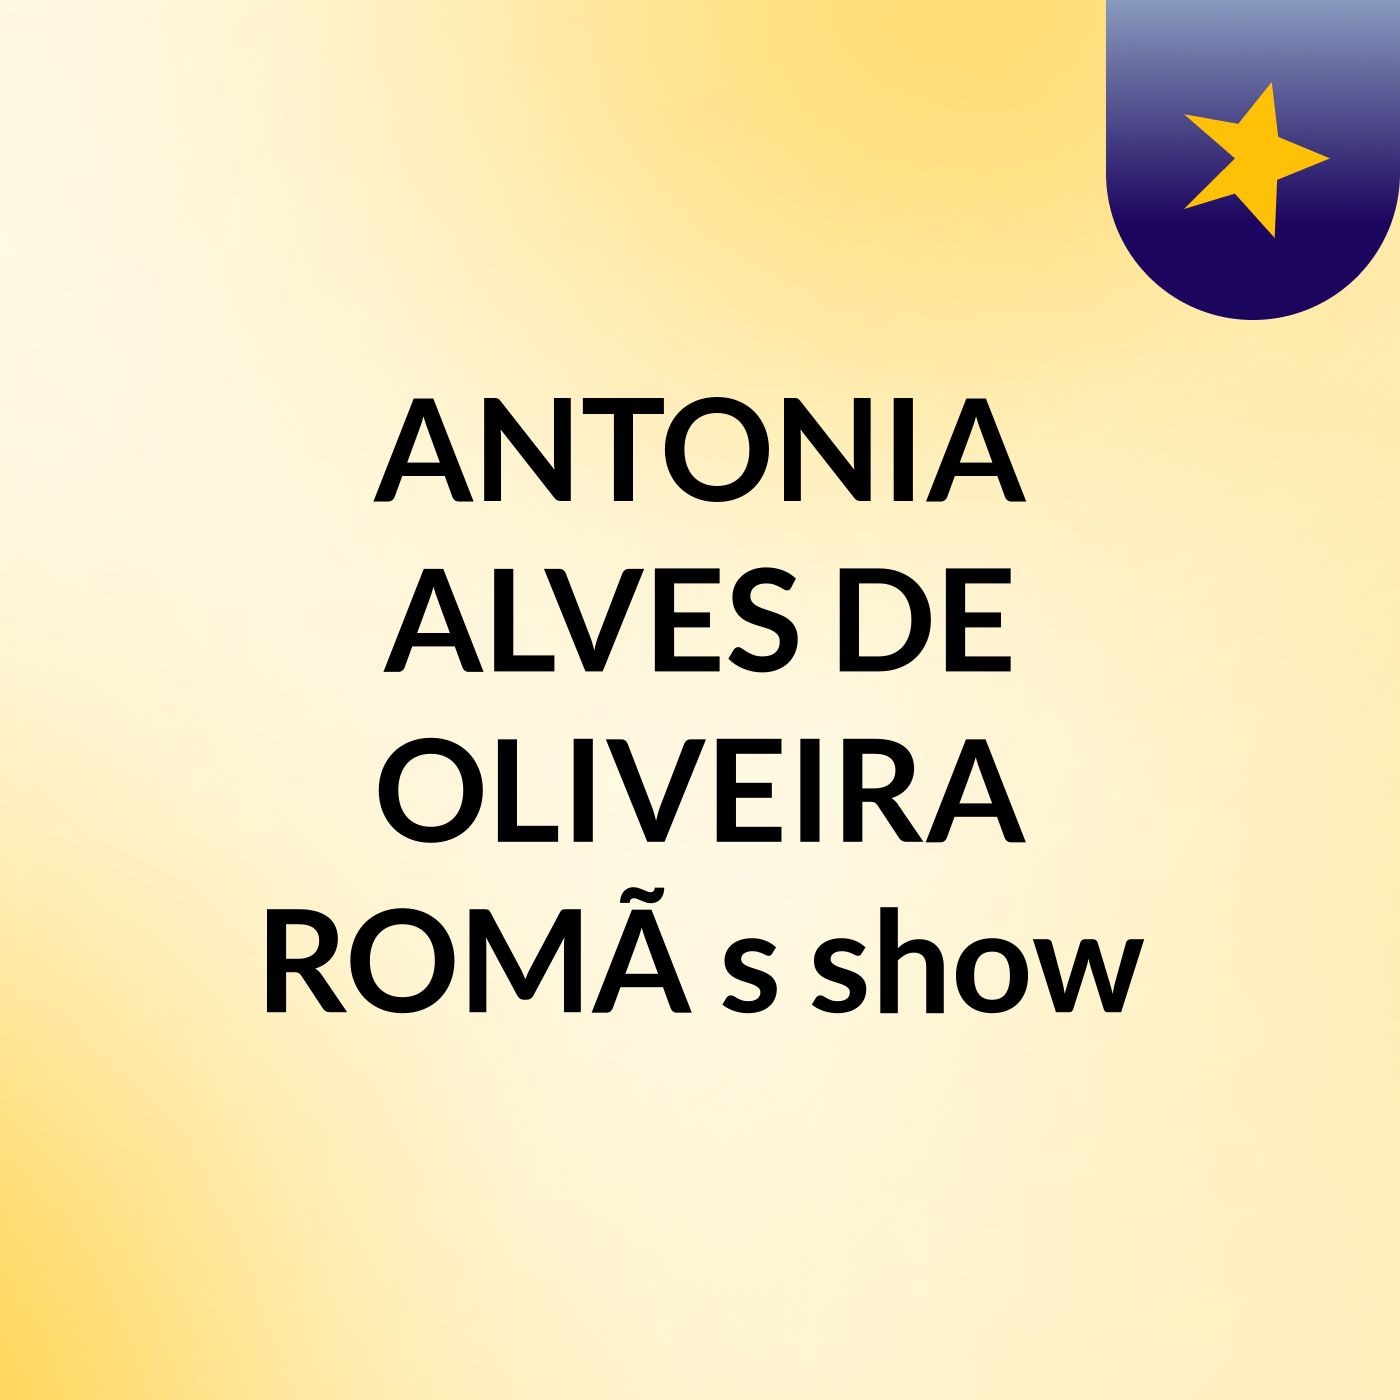 ANTONIA ALVES DE OLIVEIRA ROMÃ's show